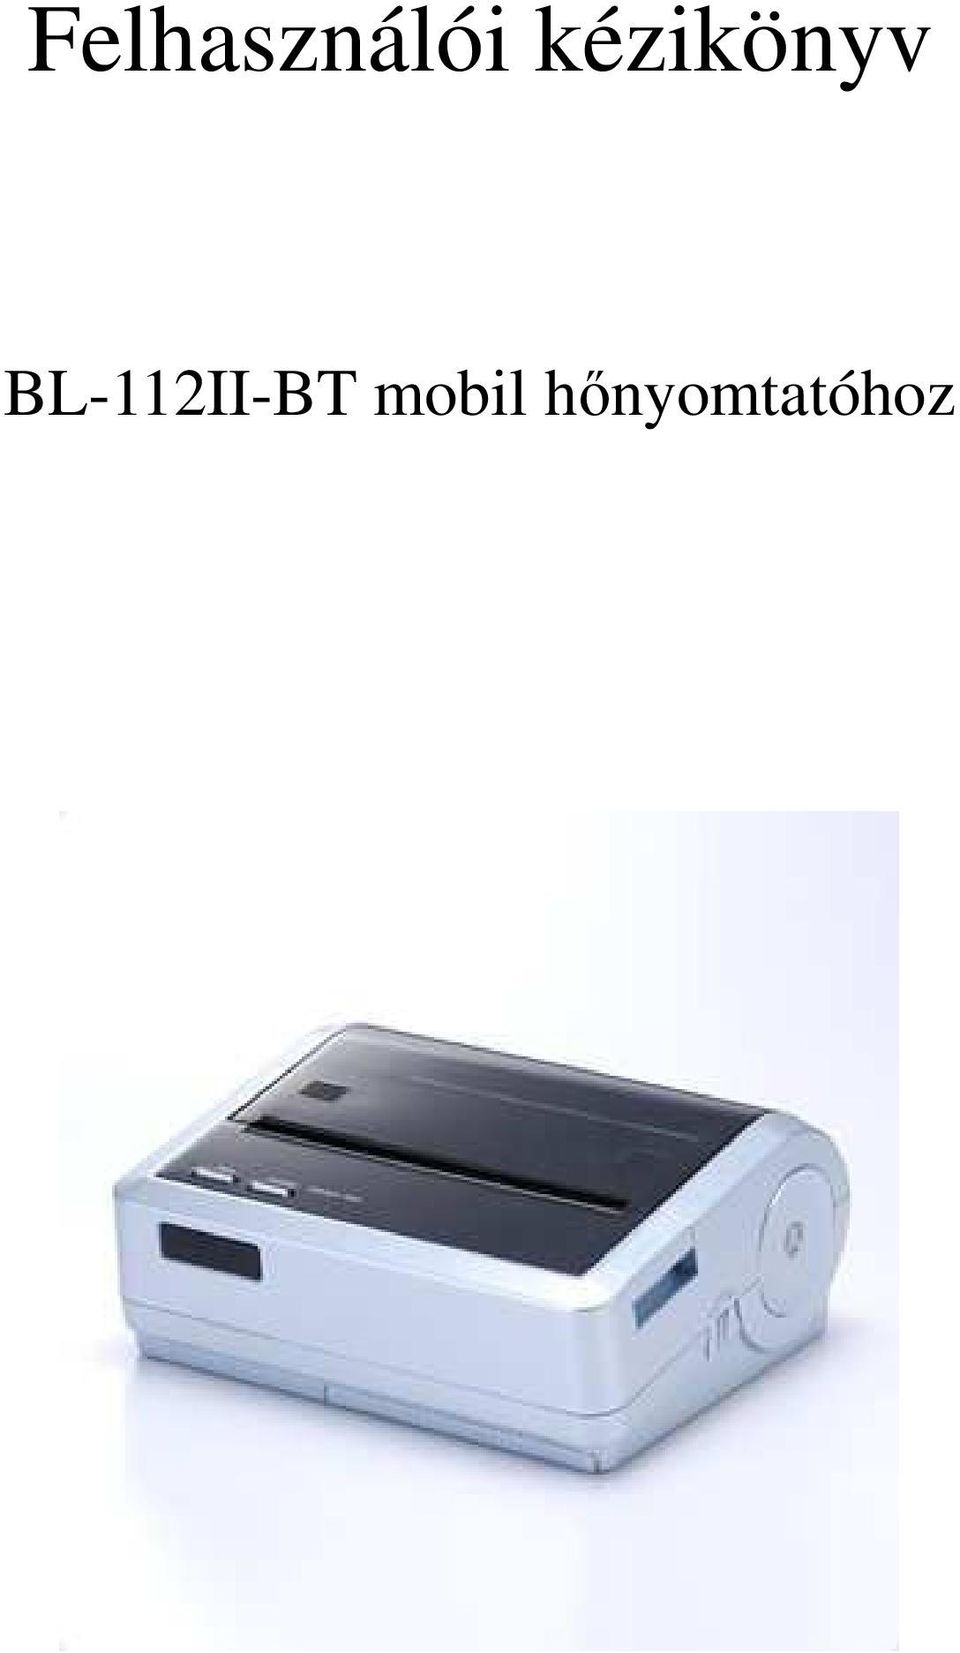 Felhasználói kézikönyv. BL-112II-BT mobil hőnyomtatóhoz - PDF Ingyenes  letöltés